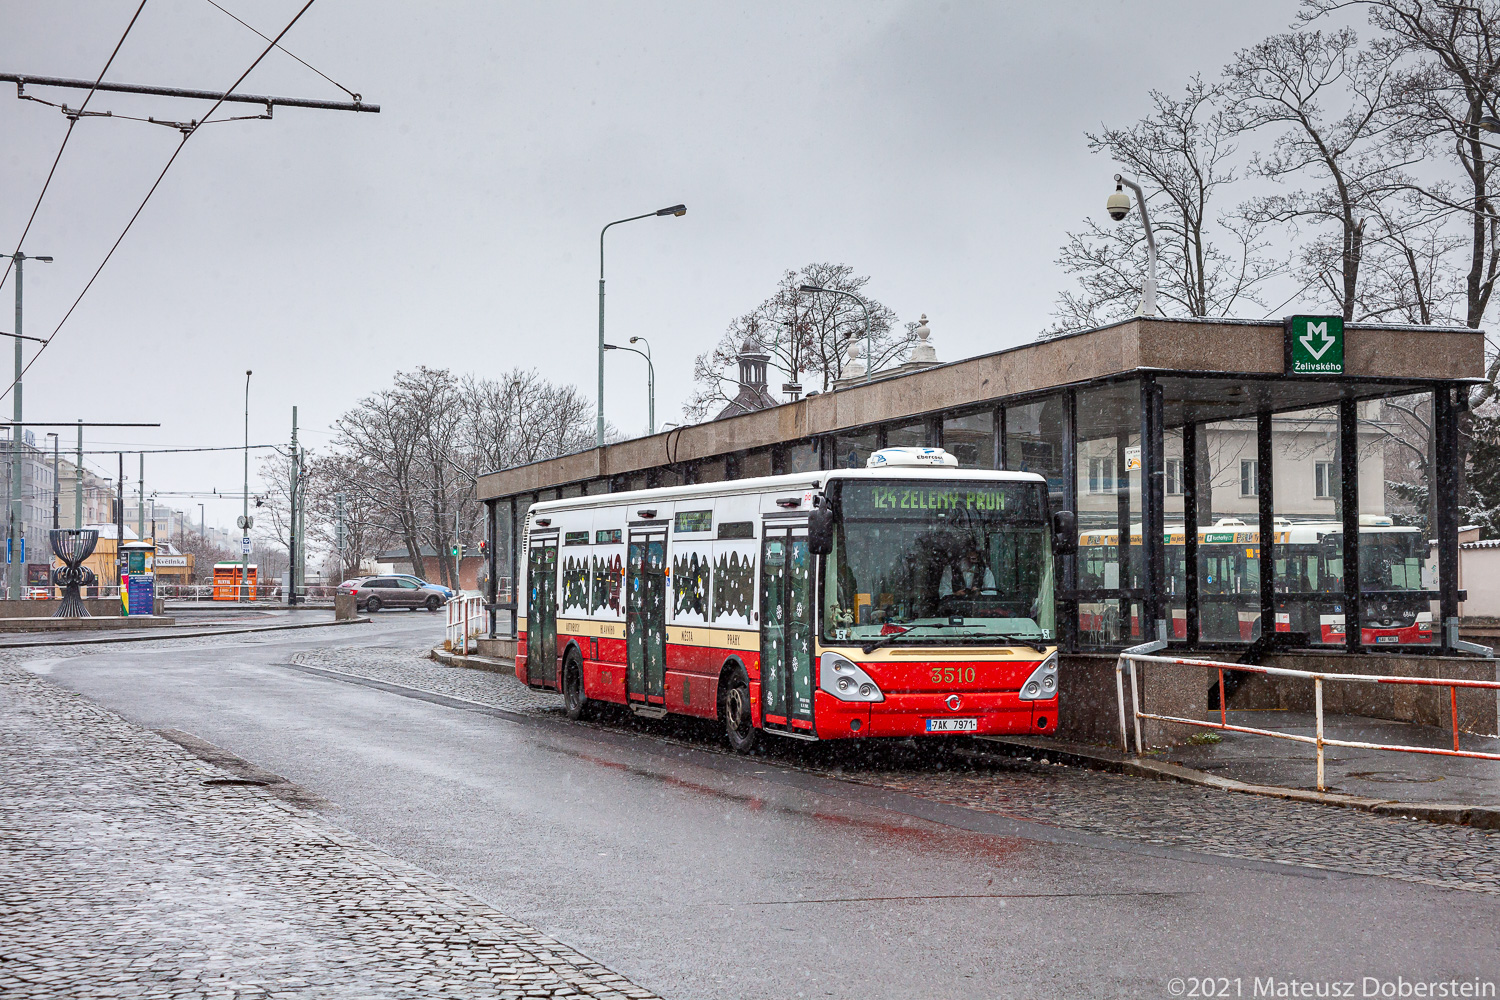 Prague, Irisbus Citelis 12M №: 3510